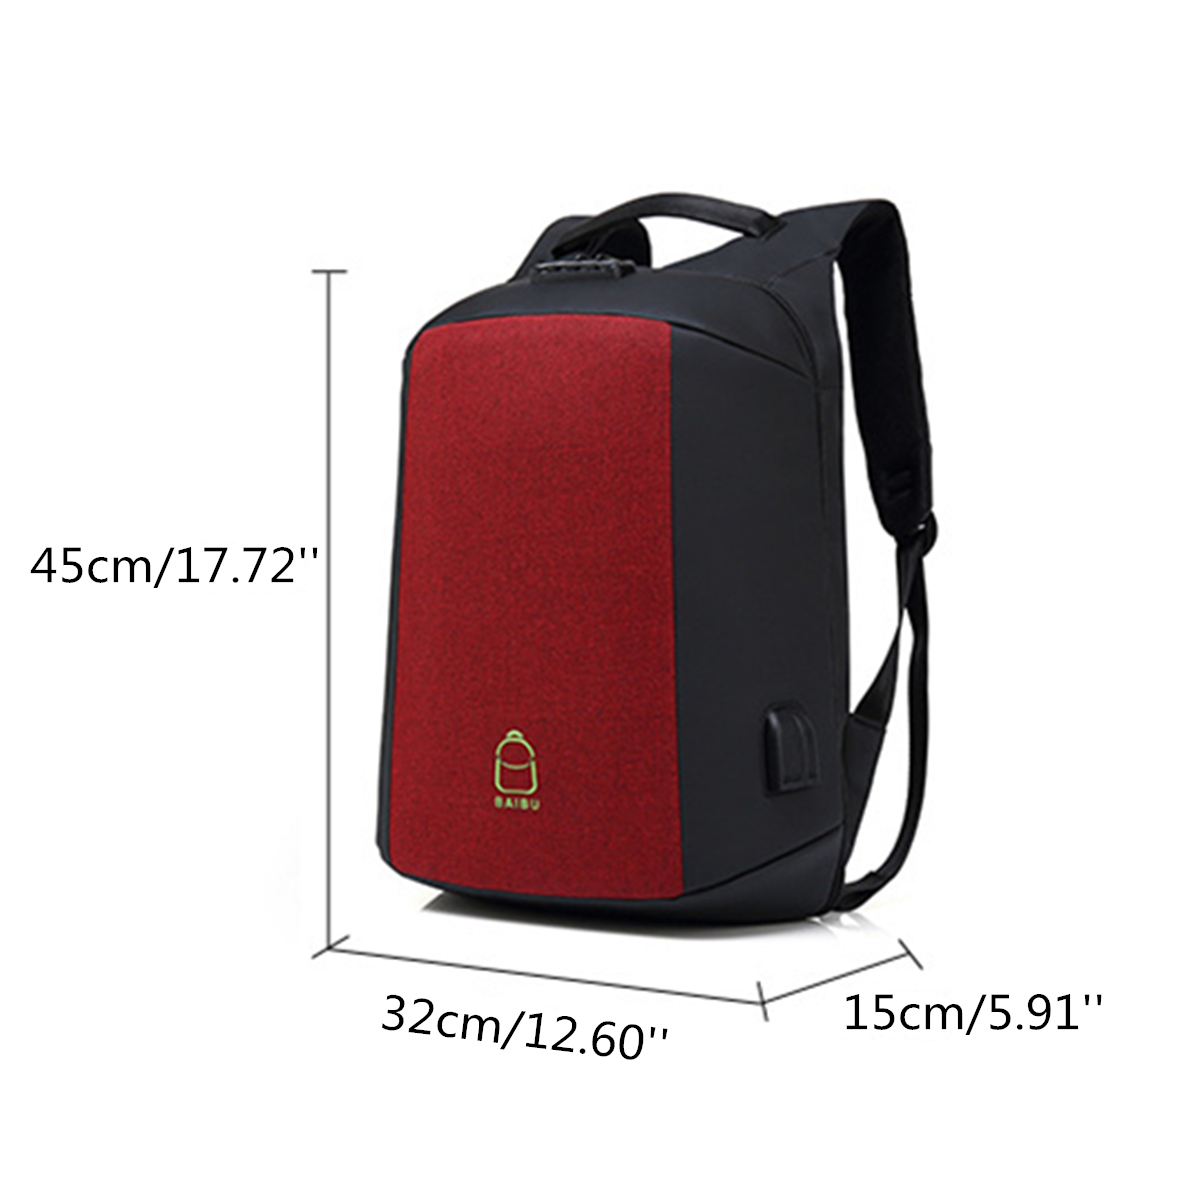 156-Inch-Laptop-Backpack-Bag-Travel-Bag-Student-Bag-With-External-USB-Charging-Port-1288885-10